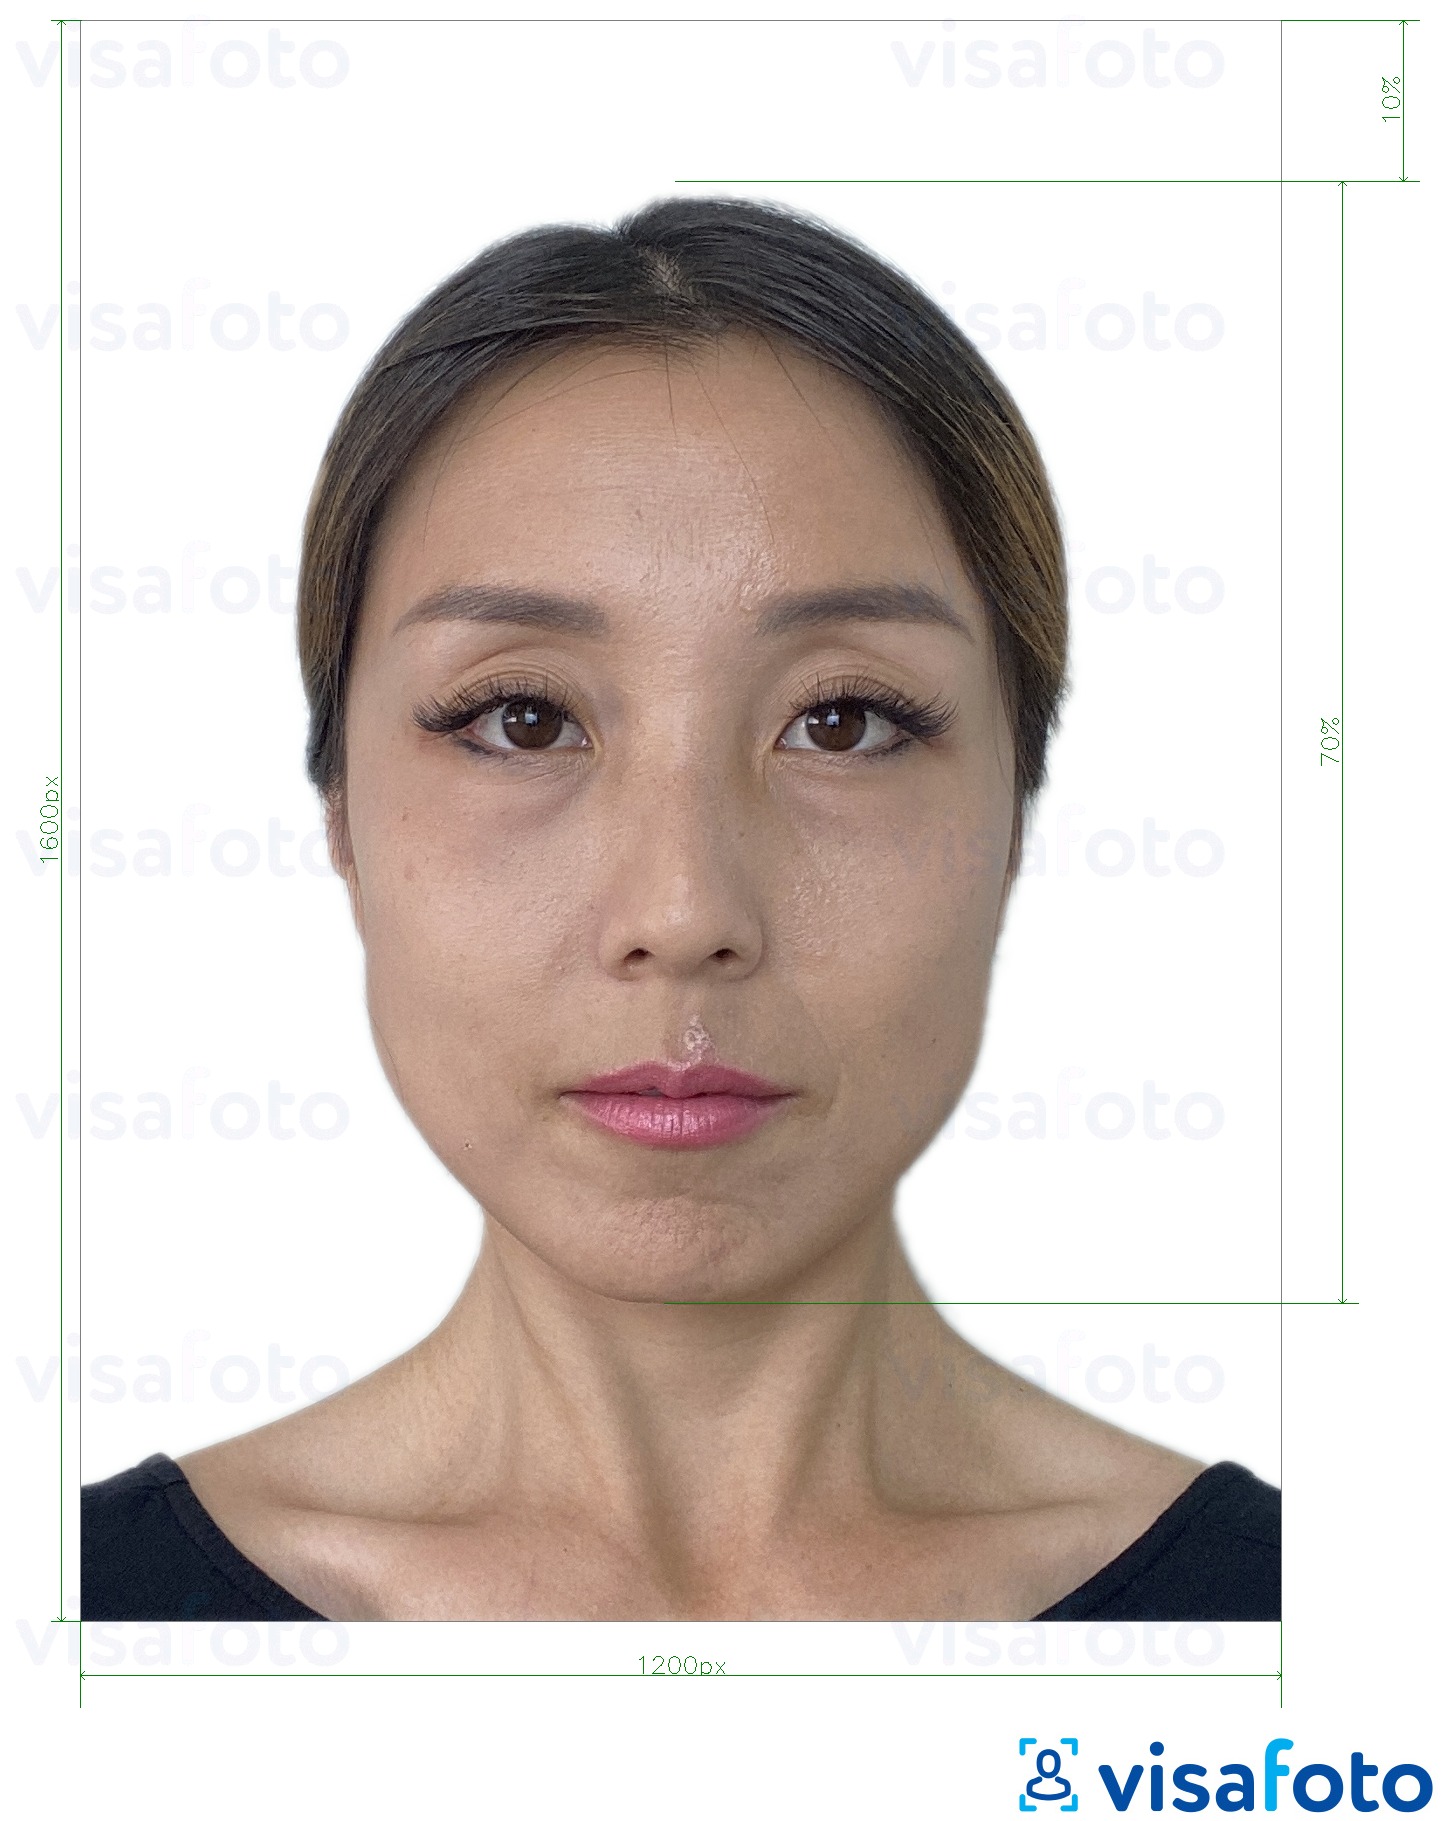 Гонконг онлайн электрондық визасы 1200x1600 пиксель үшін нақты мөлшер өлшемі бар фото үлгісі